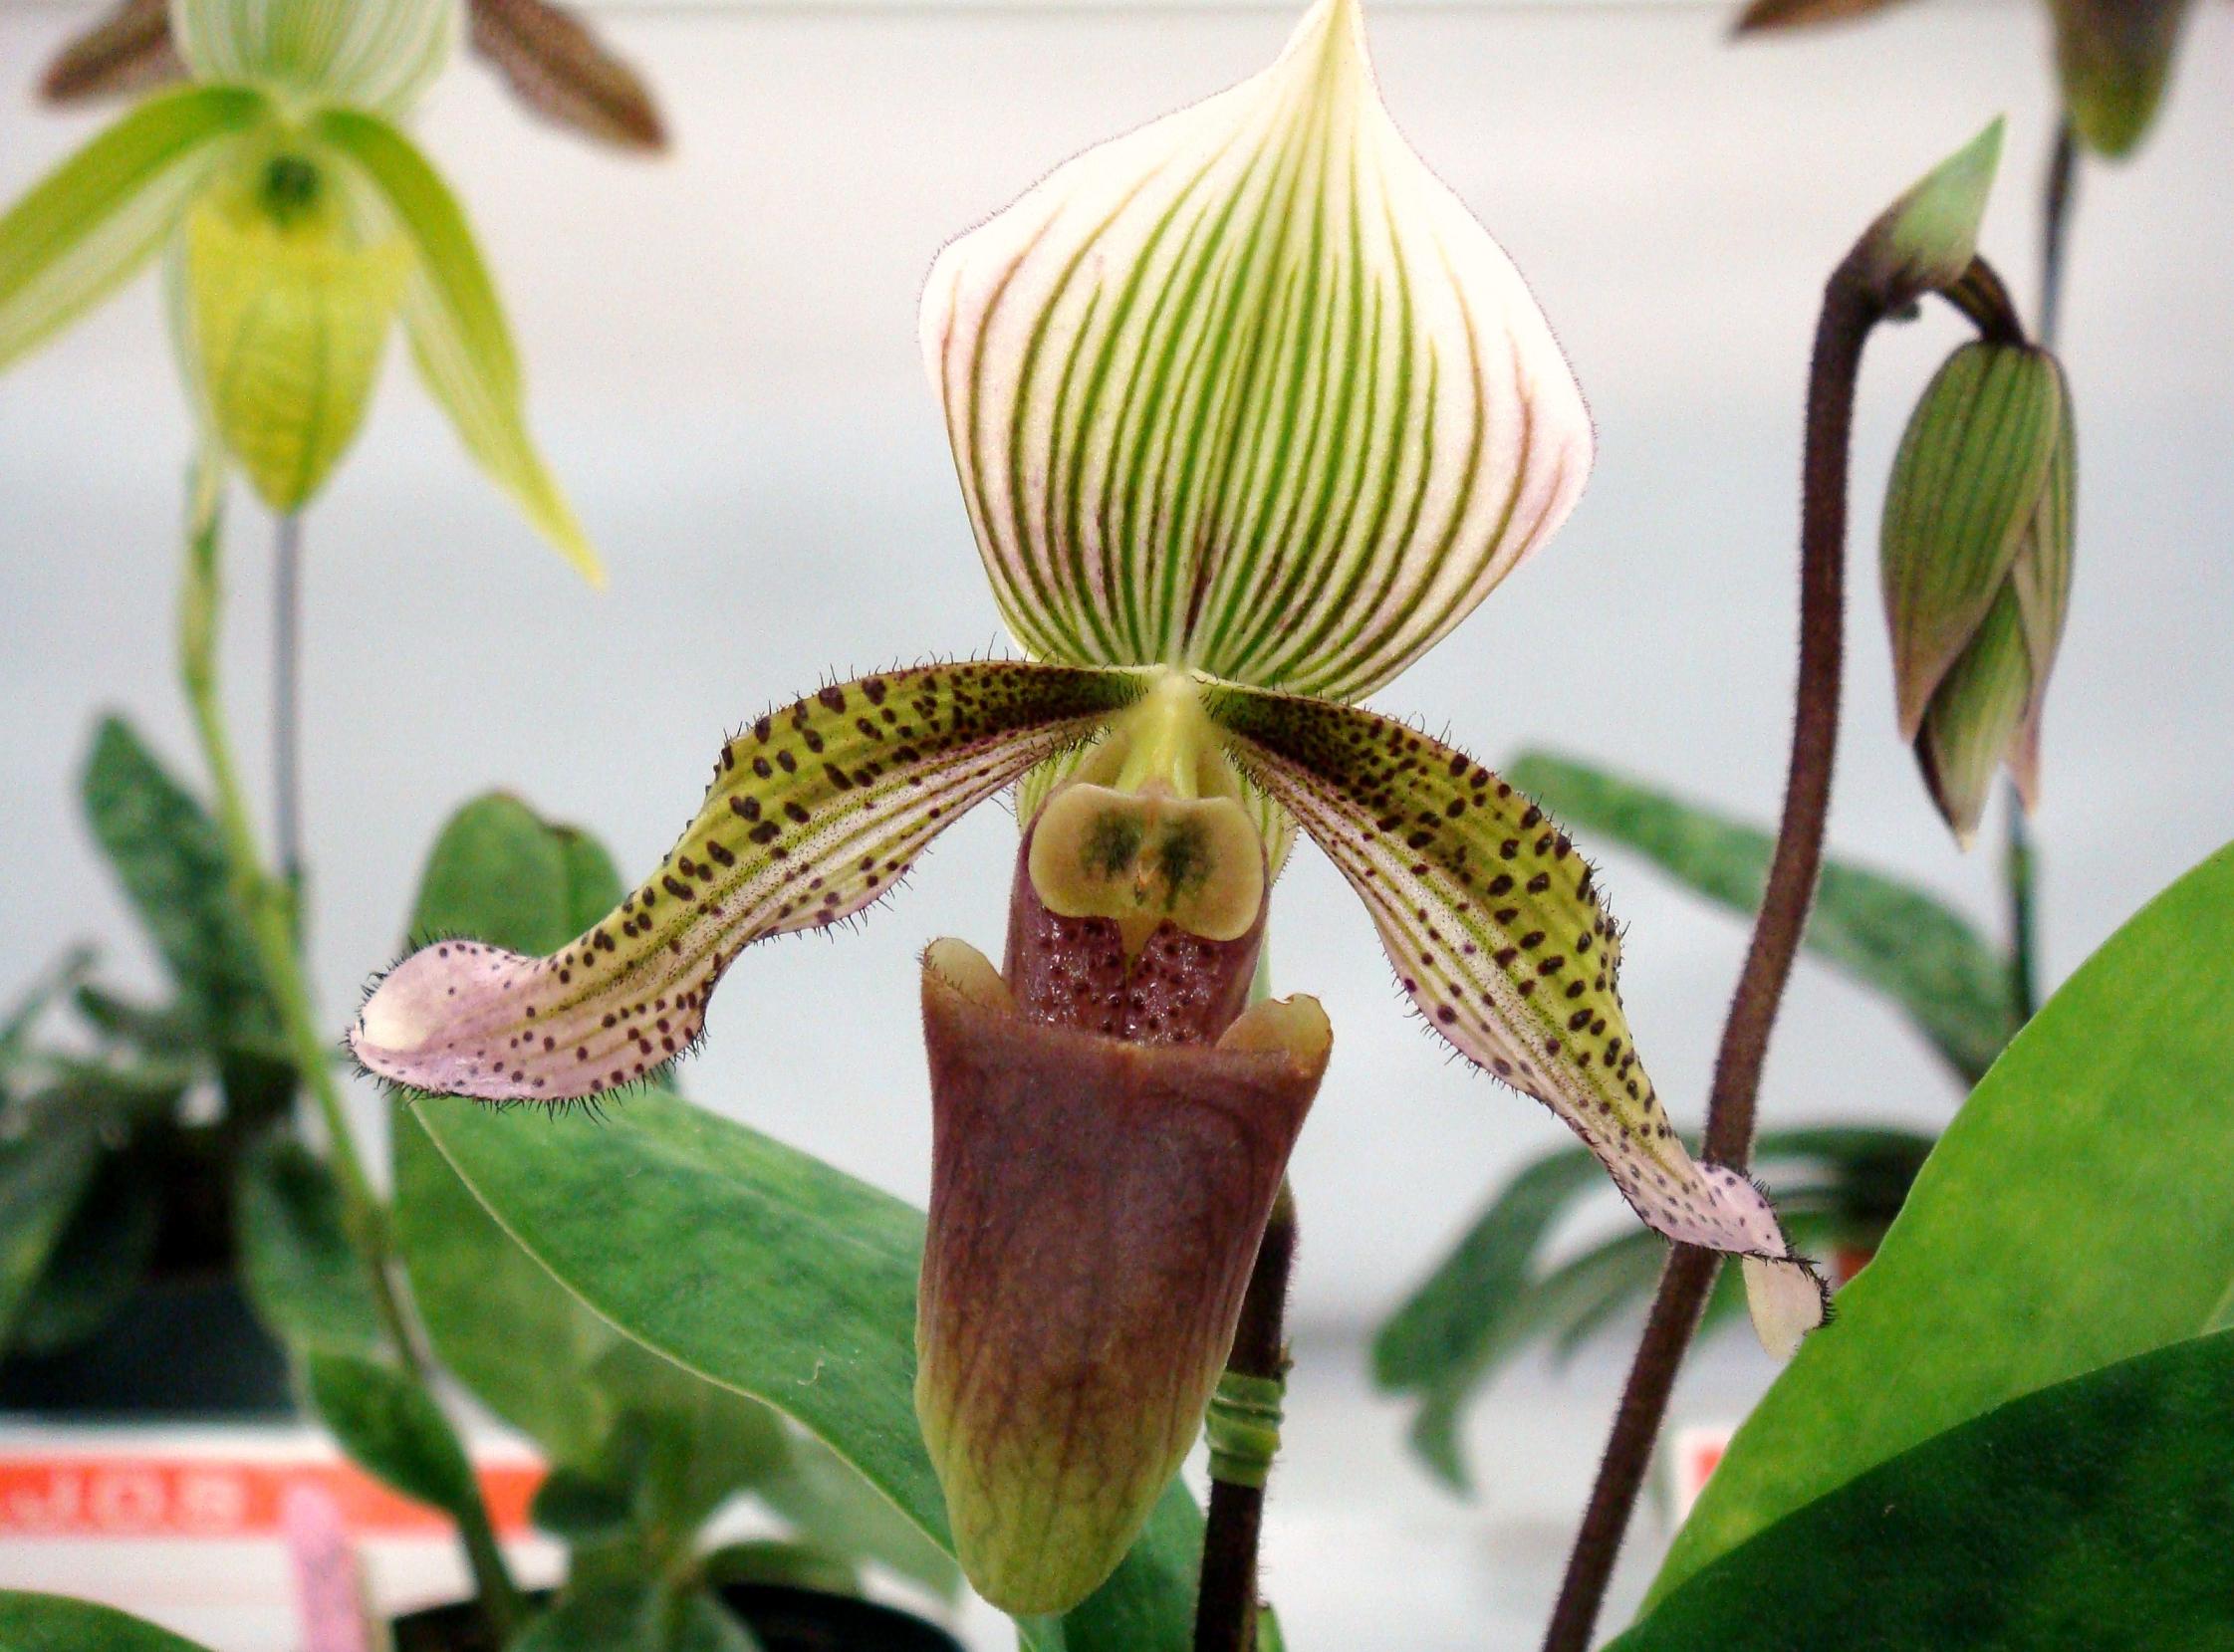 http://orchids.la.coocan.jp/Paphiopedilum/Paphiopedilum%20schoseri/DSC04566.JPG